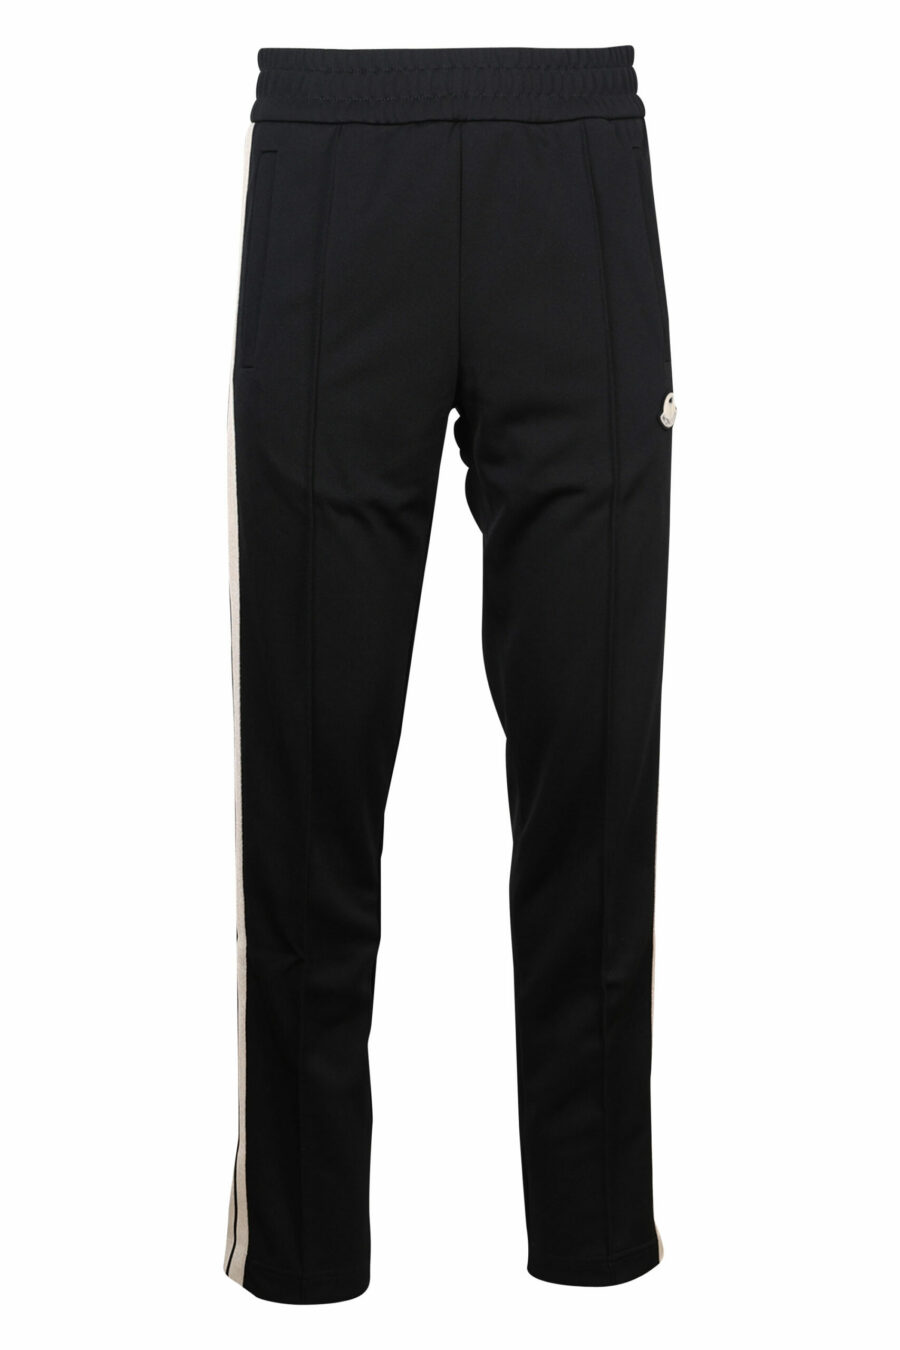 Pantalón de chándal negro con franjas blancas laterales - 8057151109214 scaled